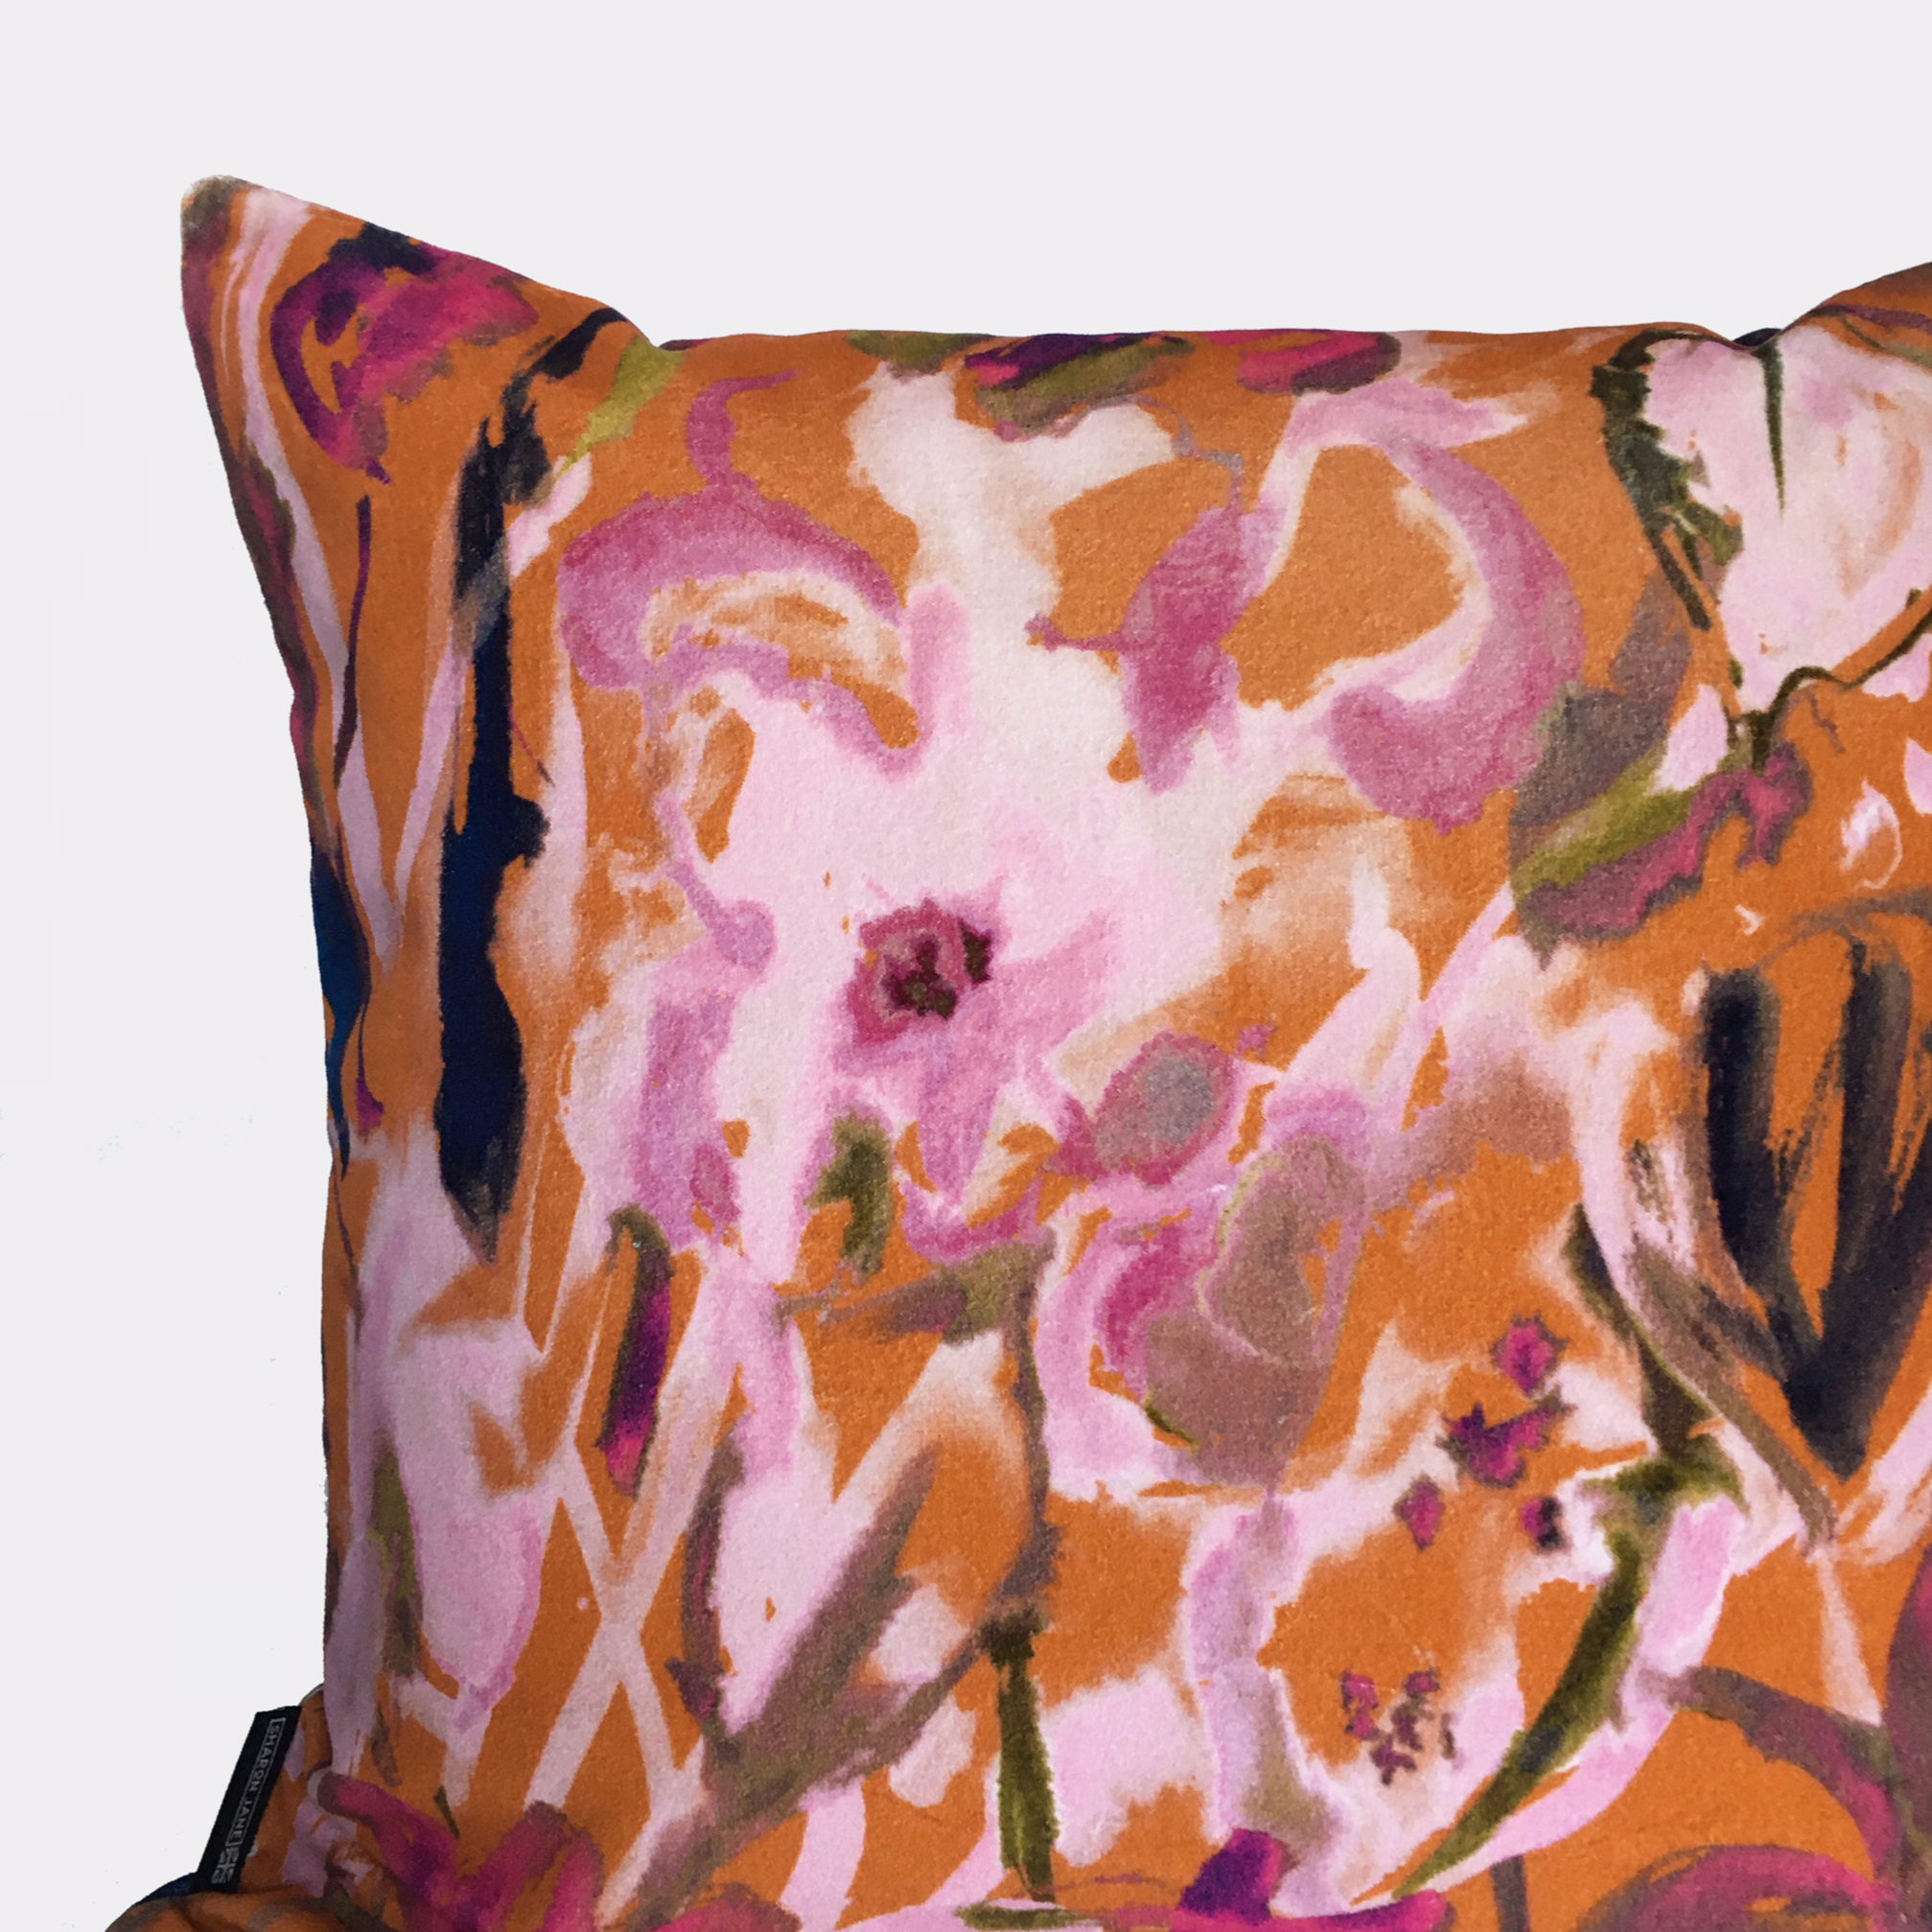 Abstract Floral Velvet Cushion - Burnt Orange